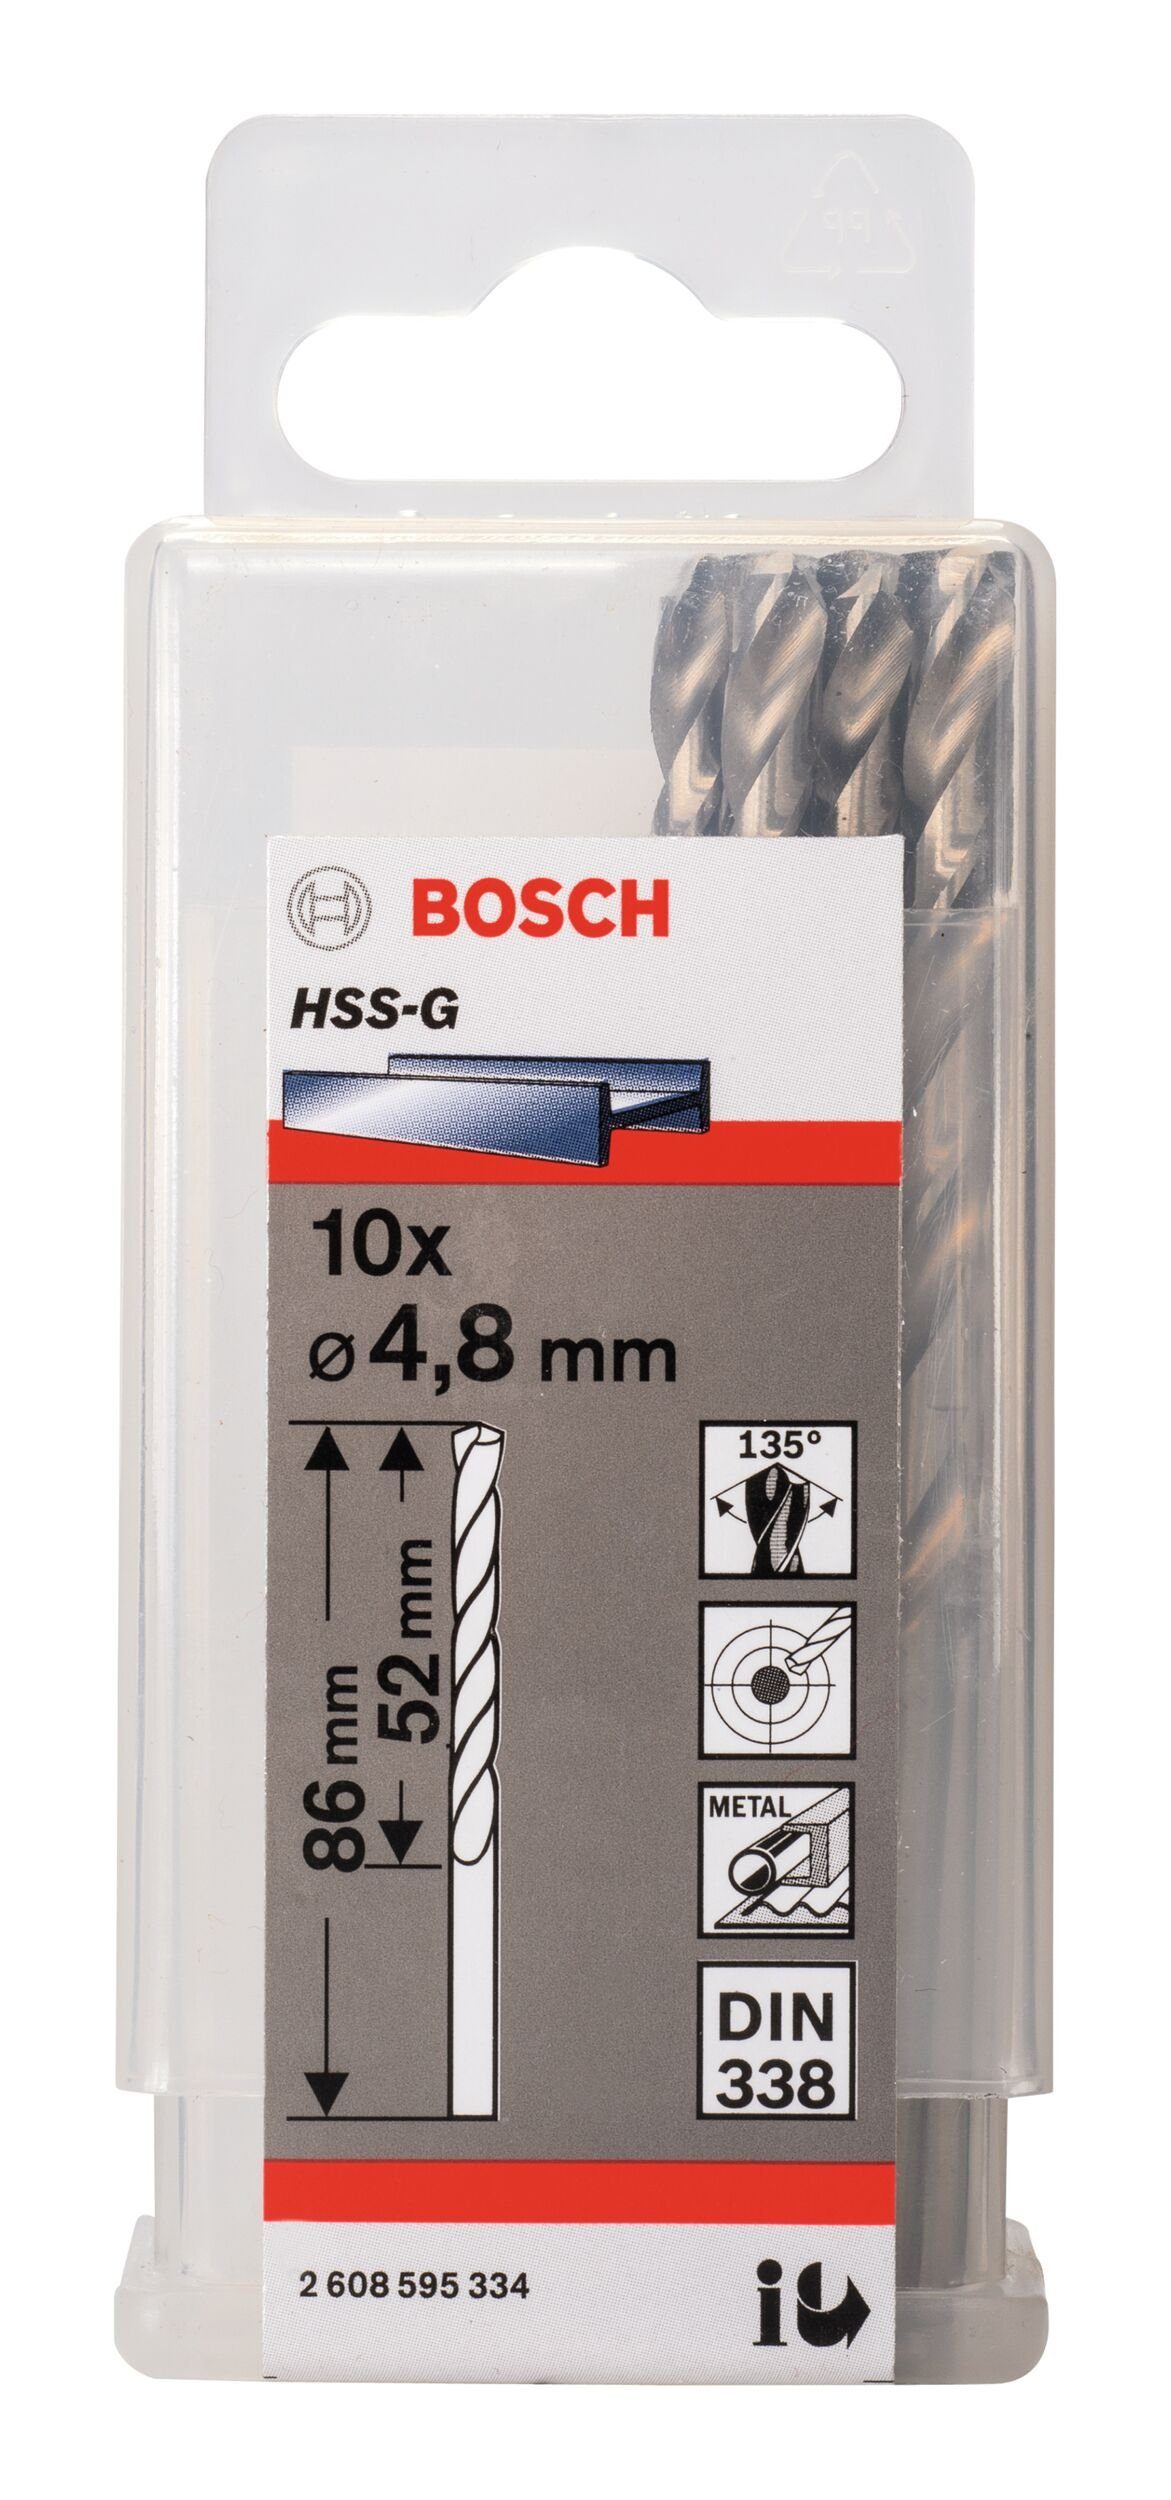 x (DIN Stück), BOSCH 83 x HSS-G (10 Metallbohrer, - 52 338) 10er-Pack mm - 4,8